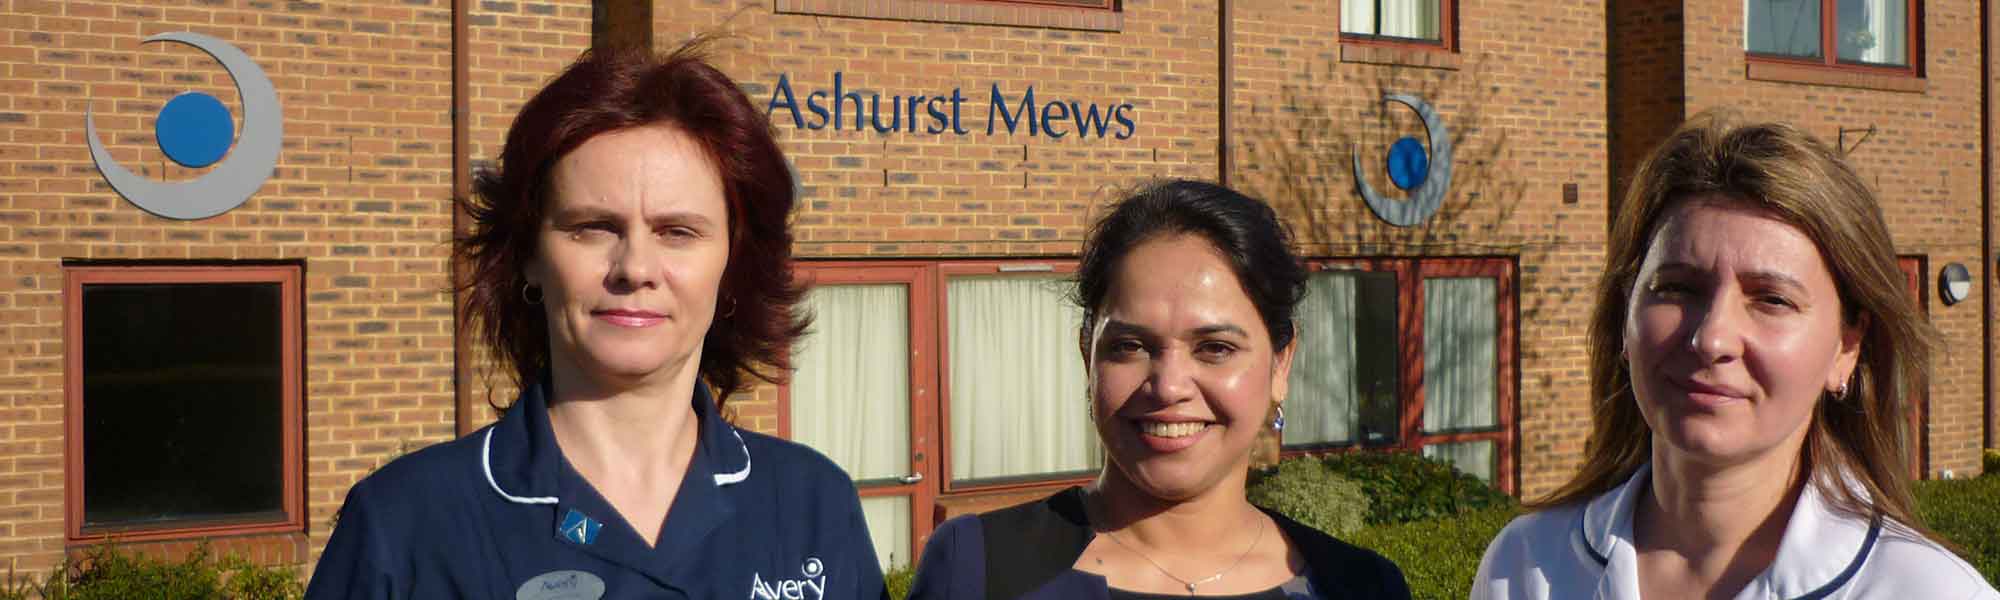 Ashurst Mews Care Home Moulton Northampton